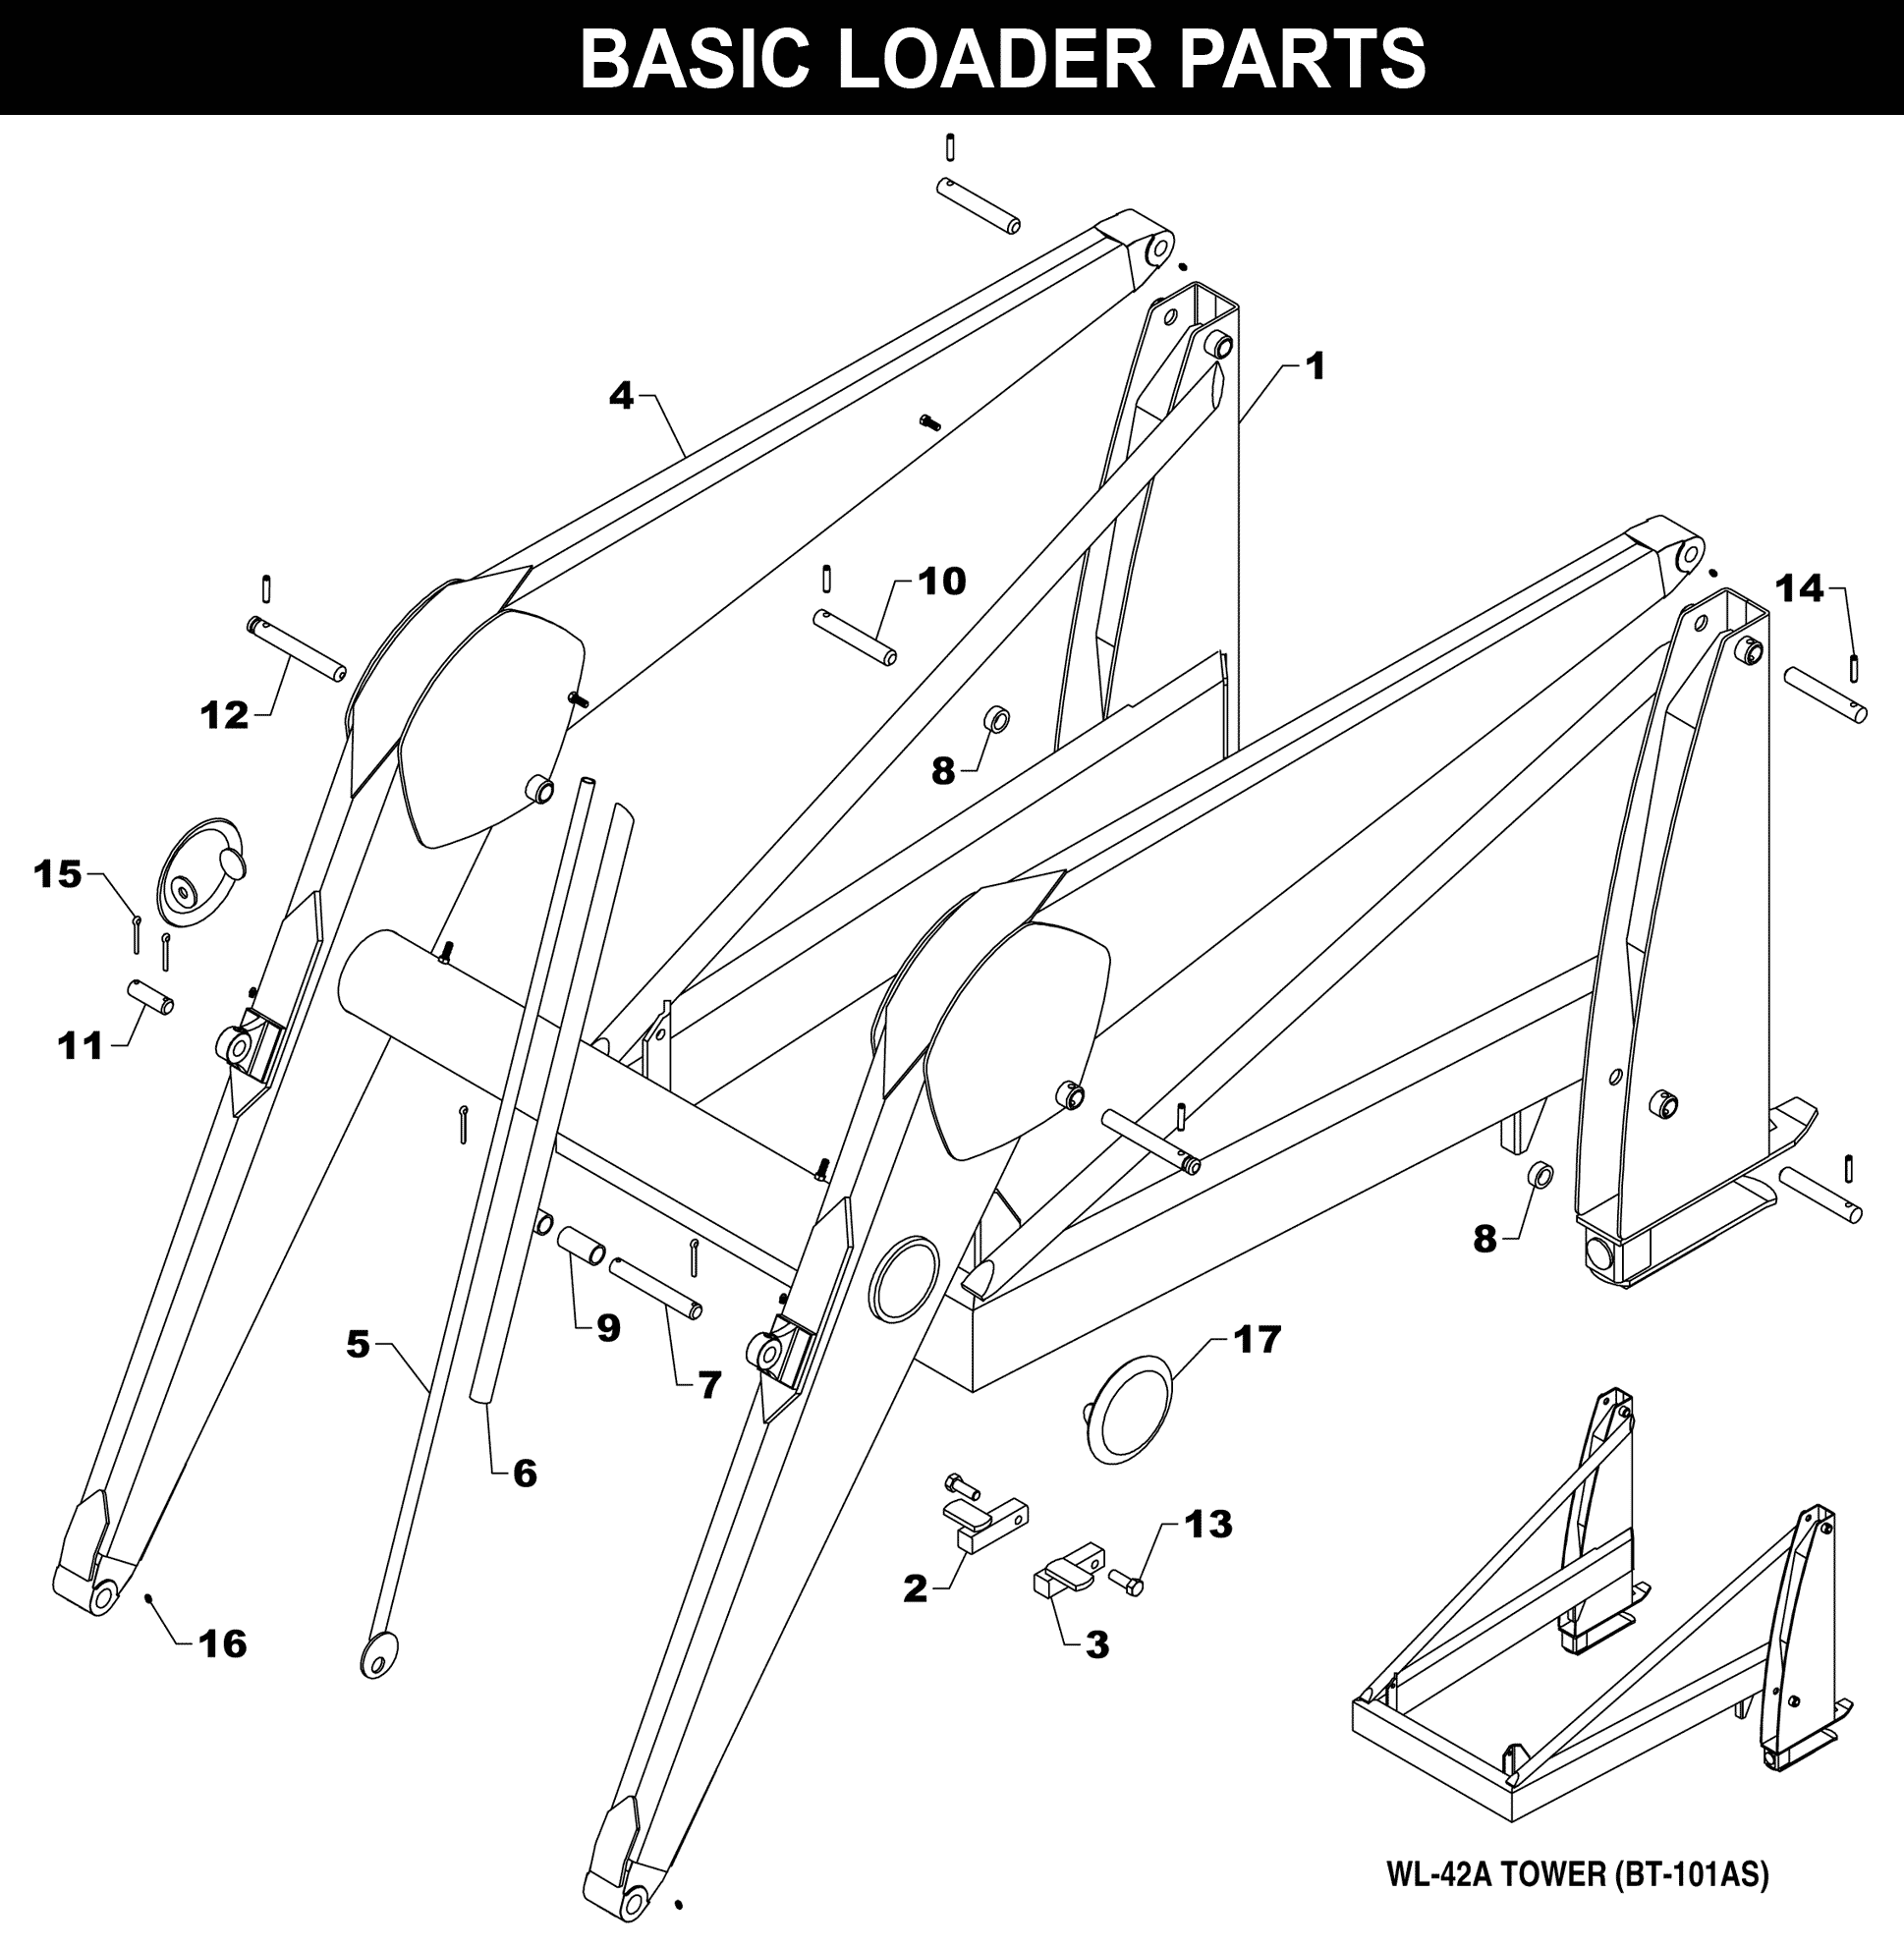 WL-42 Basic Loader Parts